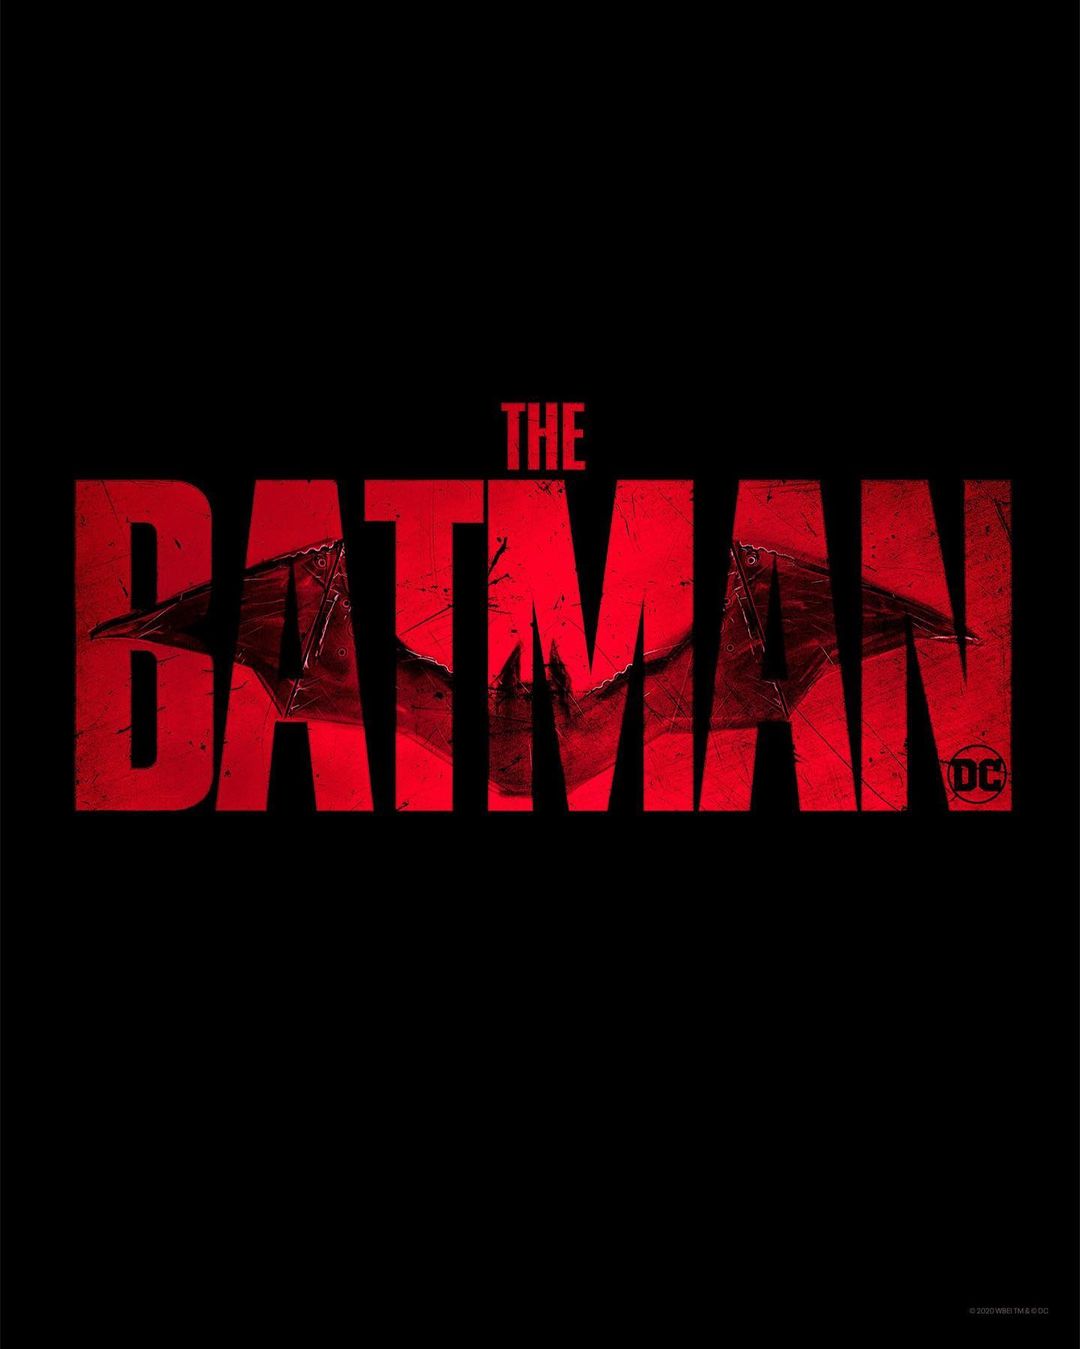 Η πρεμιέρα του «The Batman Part II» αλλάζει ημερομηνία και.. χρονιά